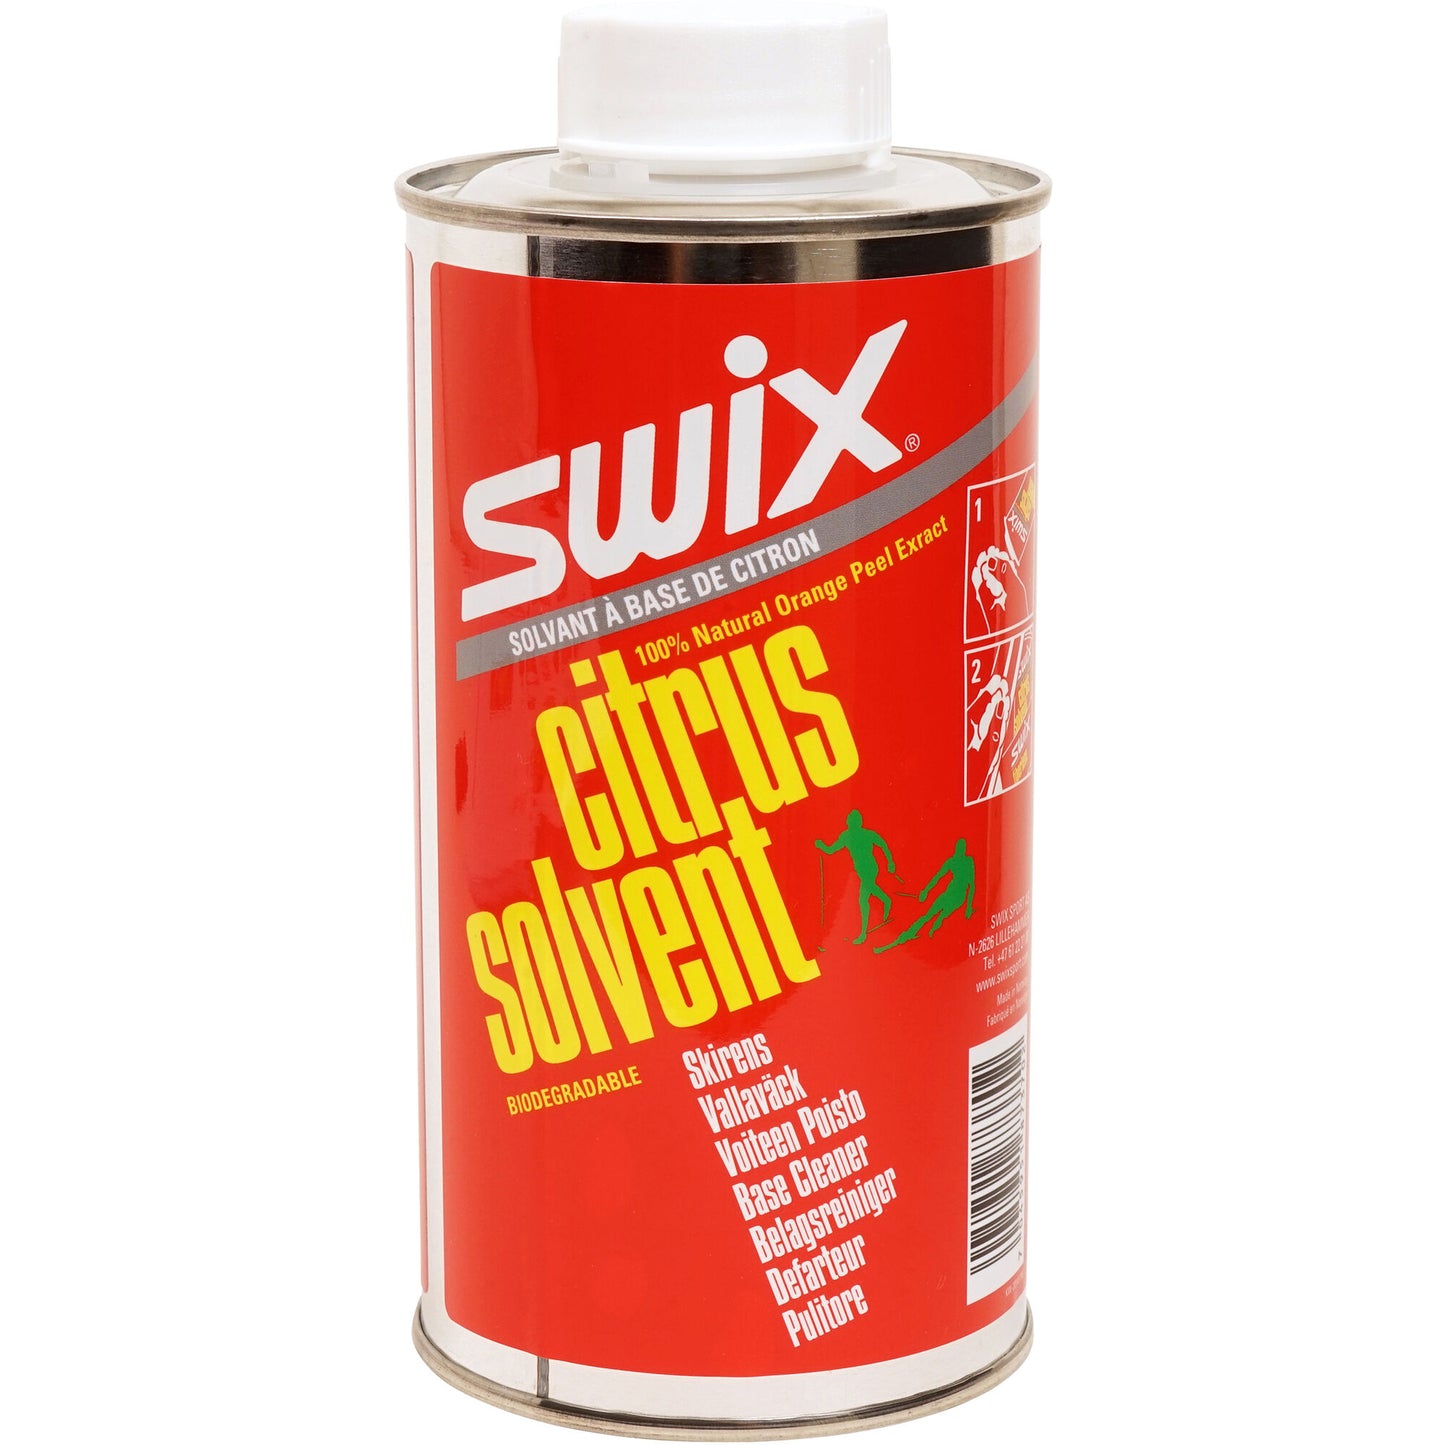 Swix Citrus Solvent | Swix Solvant aux agrumes